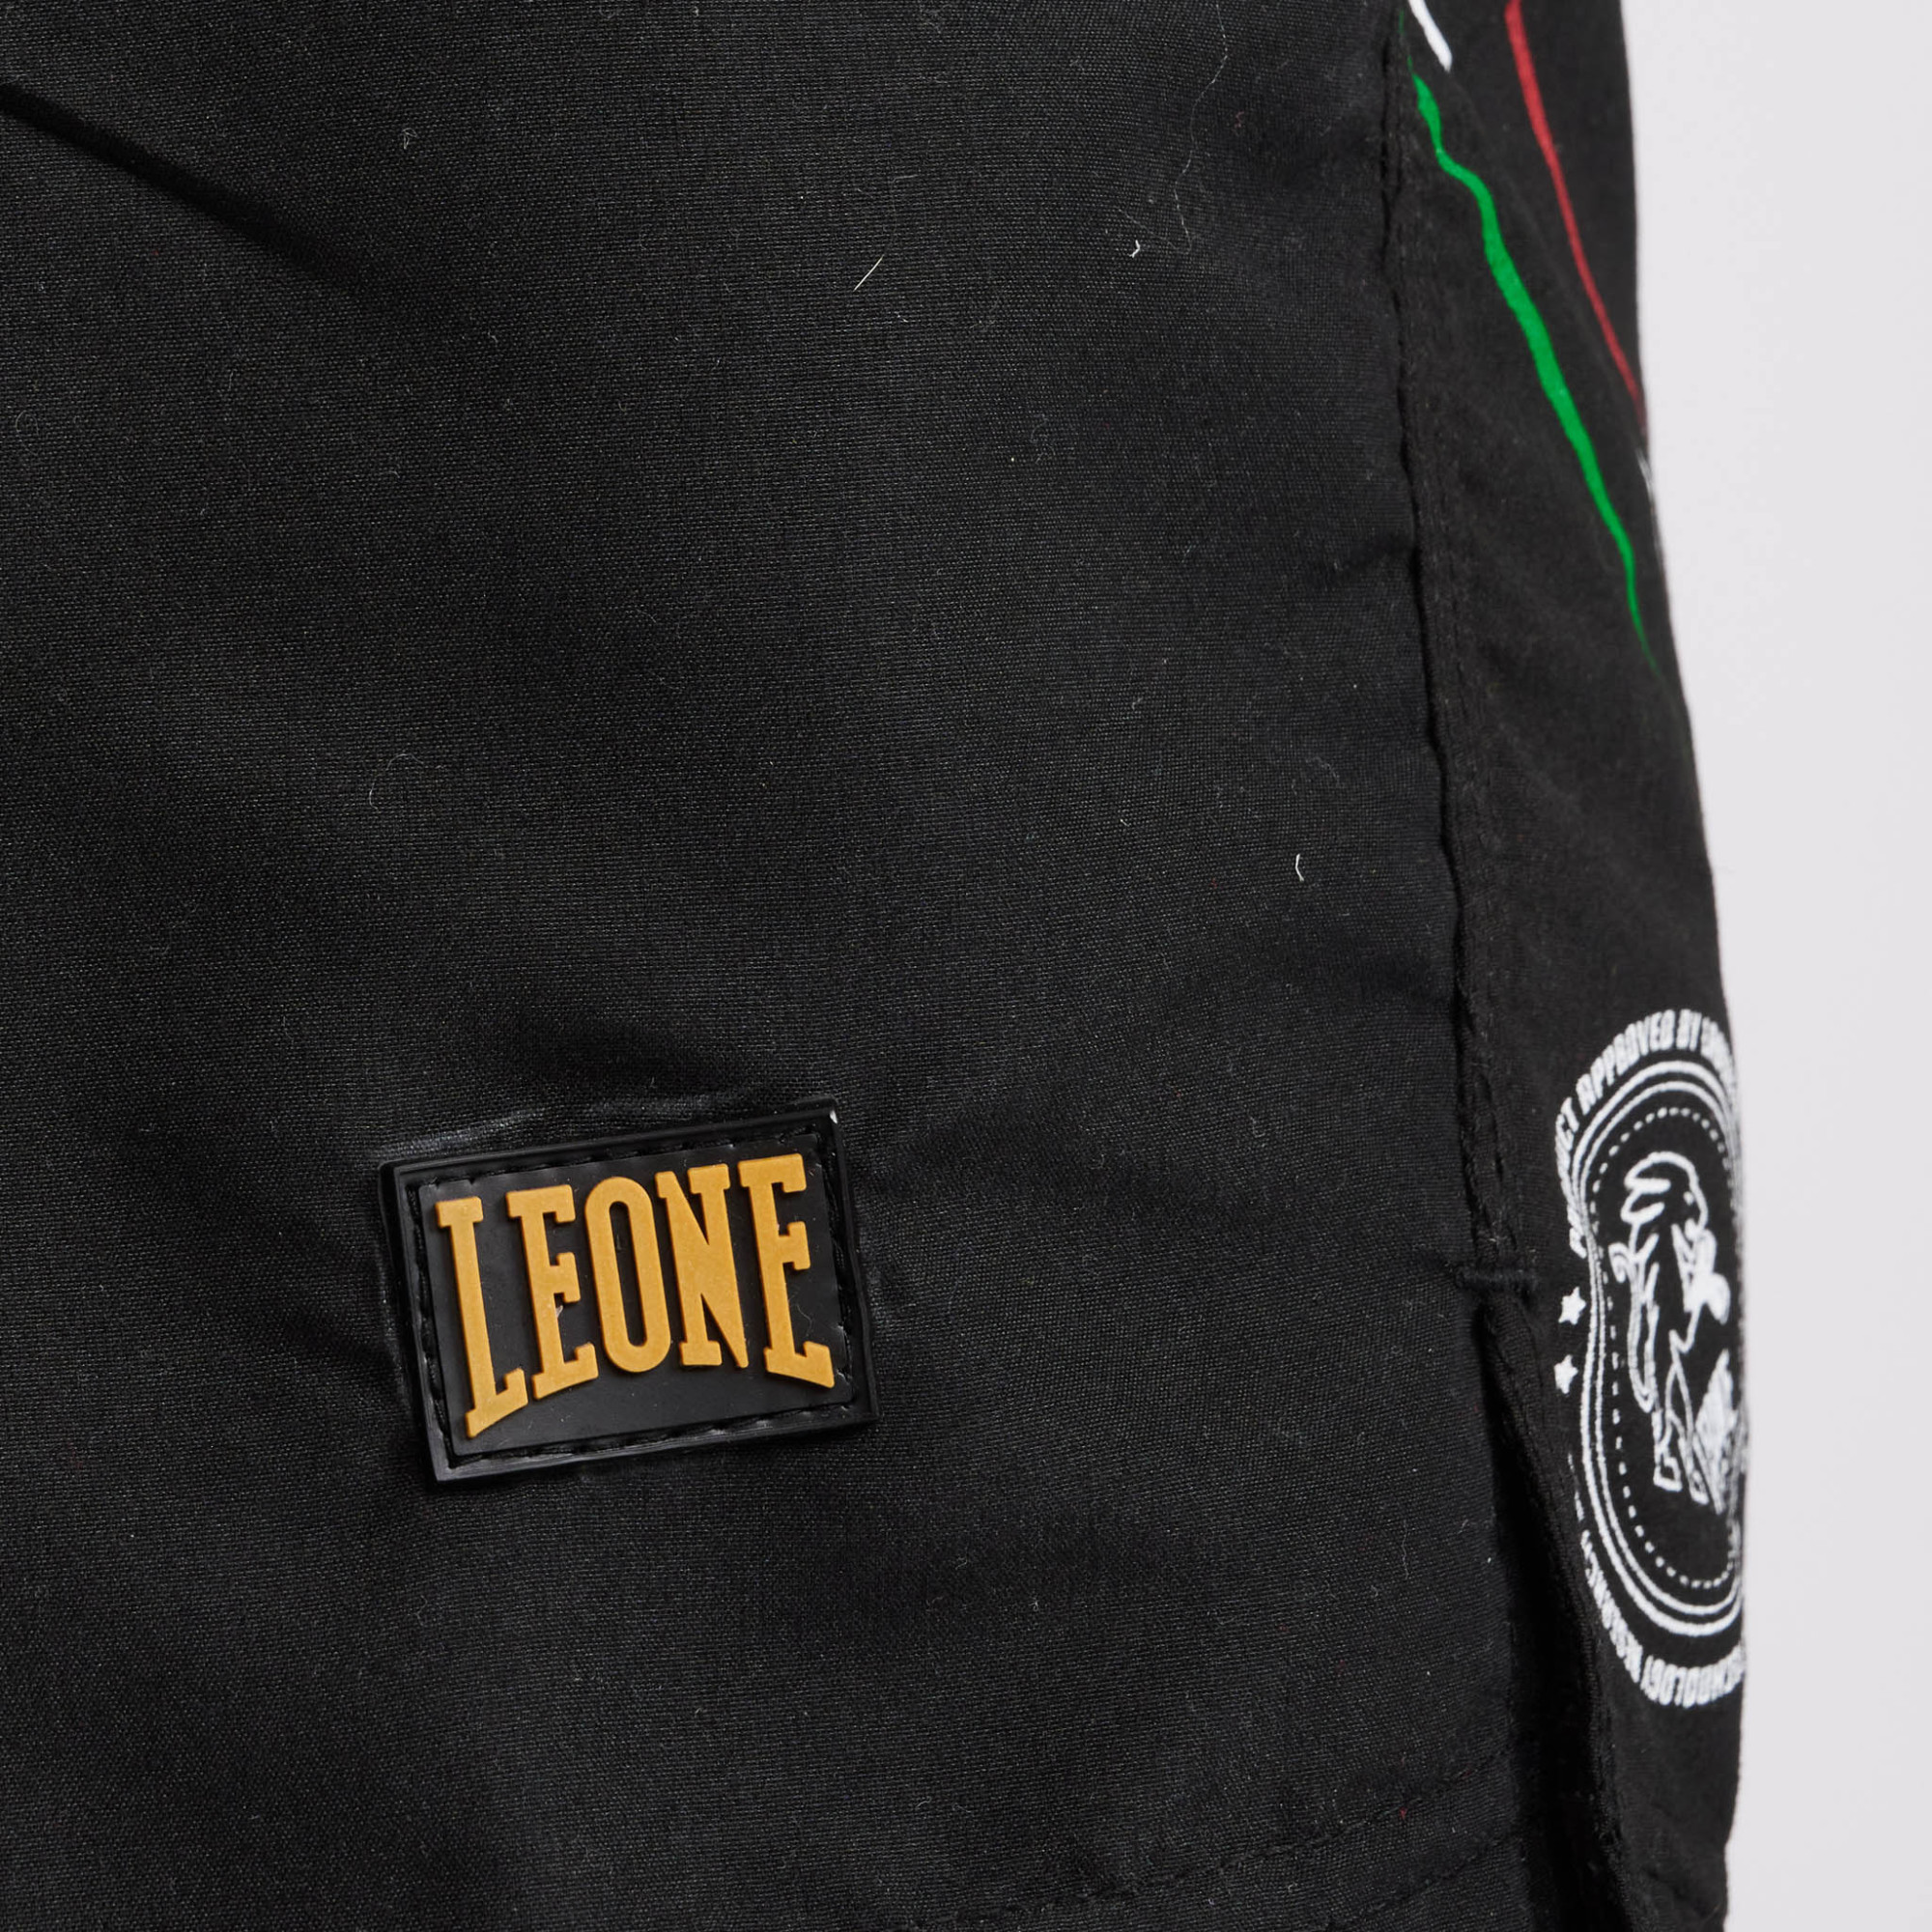 Borsone Leone Flag AC958 -  – Combat Arena